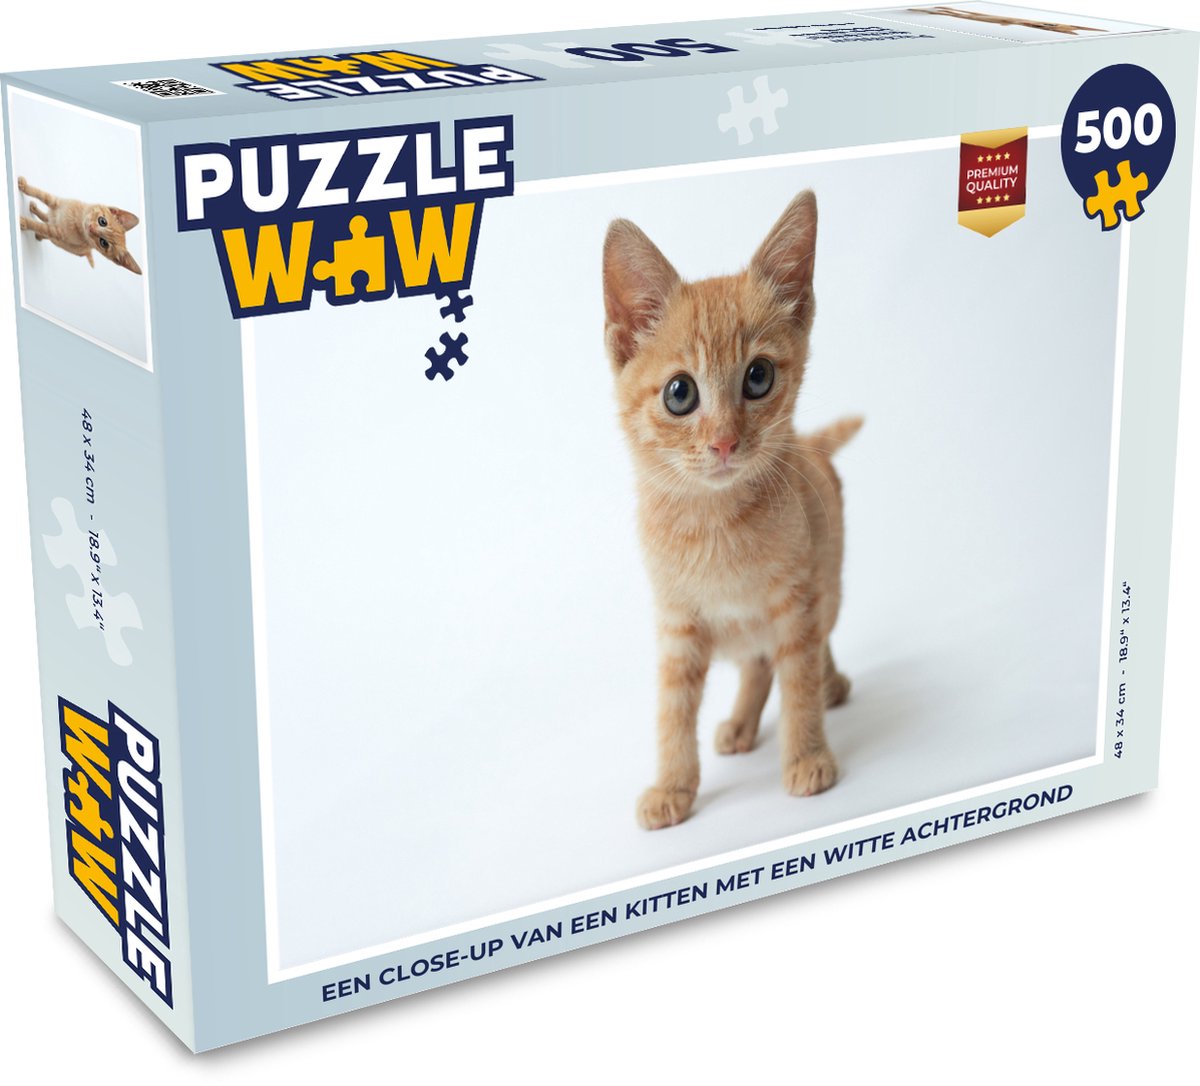 Afbeelding van product Puzzel 500 stukjes Kittens - Een close-up van een kitten met een witte achtergrond - PuzzleWow heeft +100000 puzzels